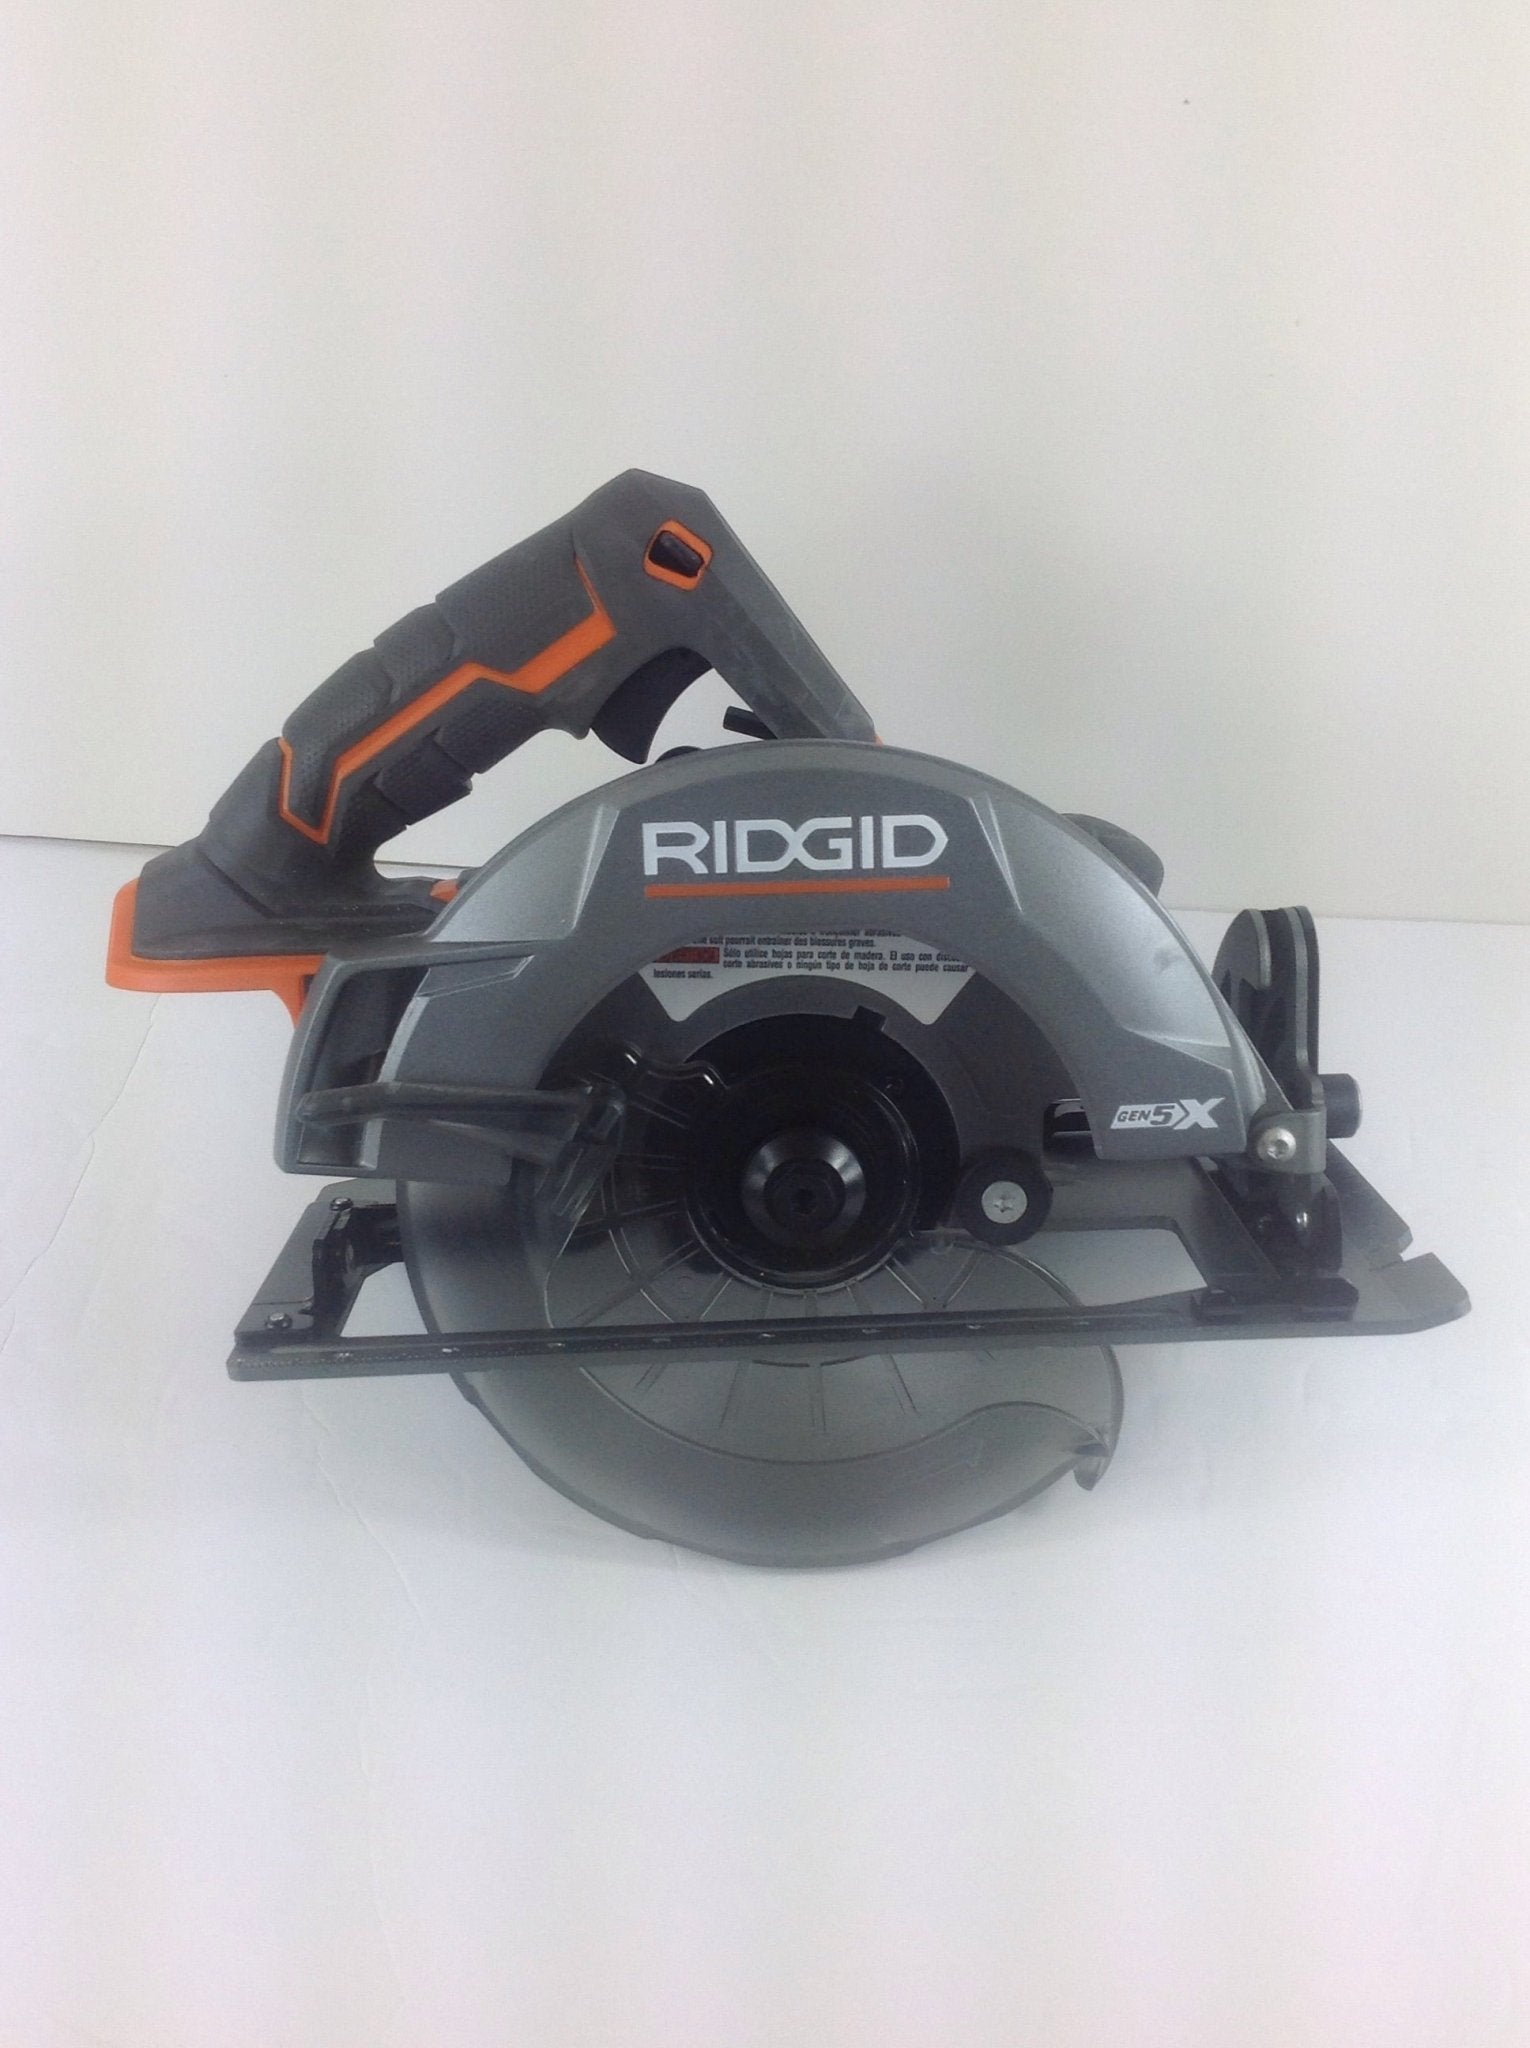 RIDGID Gen 5X - 6-1/2 inch Circular Saw - Bargainwizz